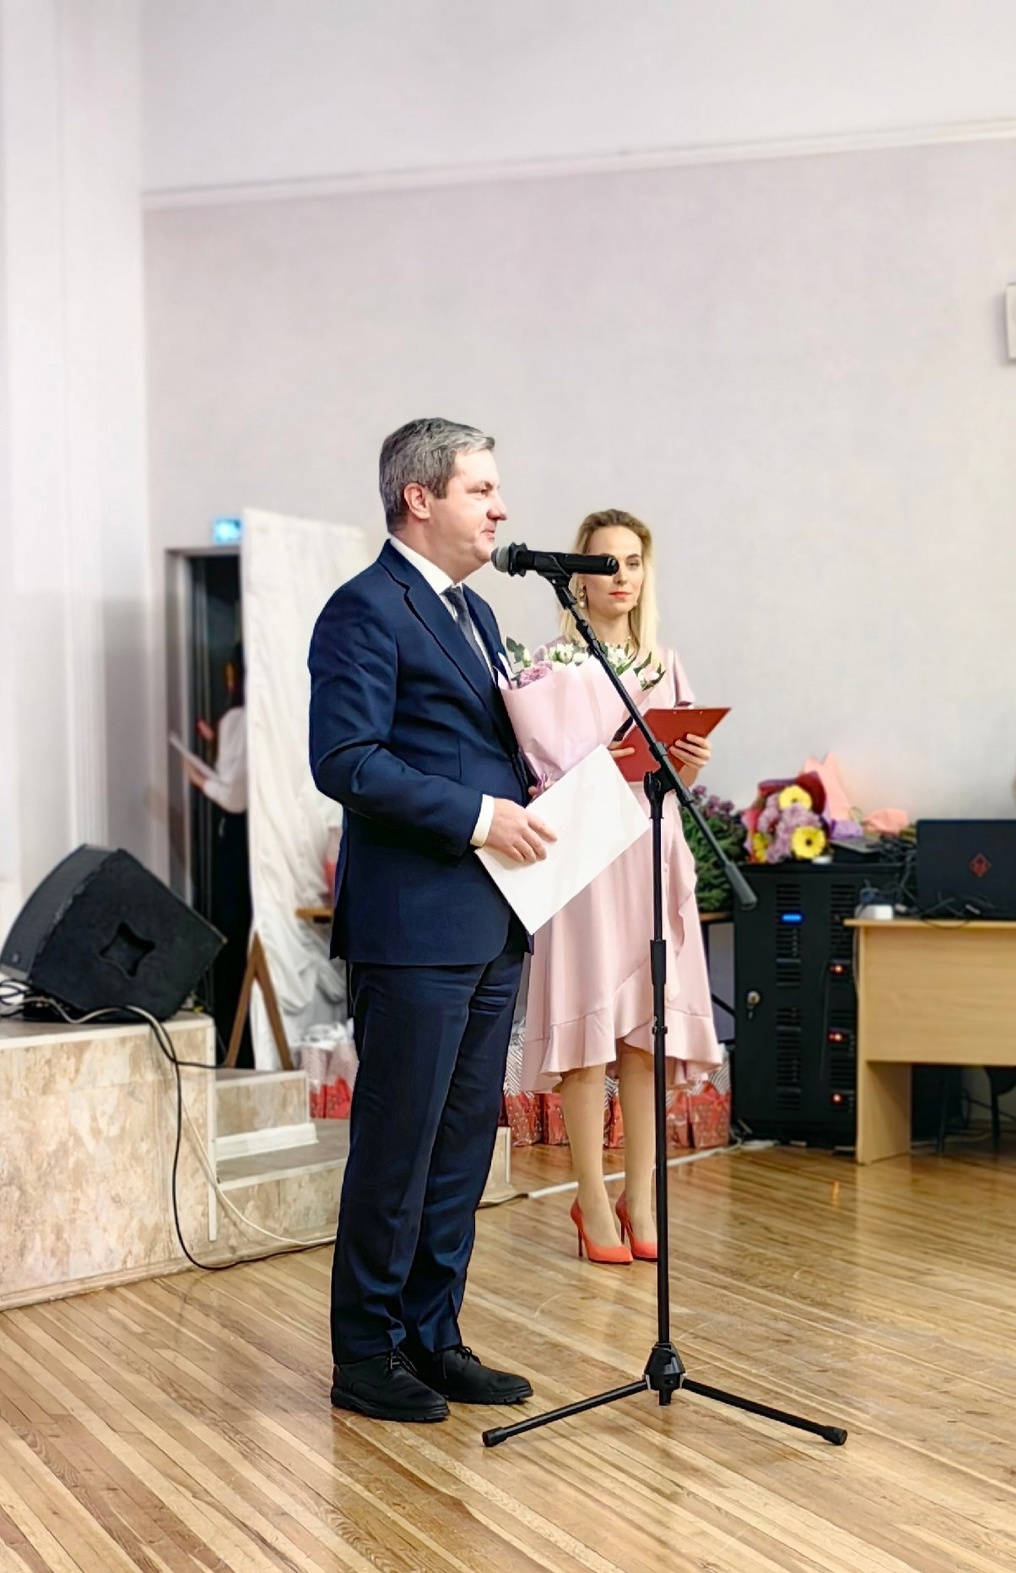 Сегодня, в Ломоносовском Дворце культуры состоялась церемония награждения сотрудников, приуроченная к 45-летию учреждения.